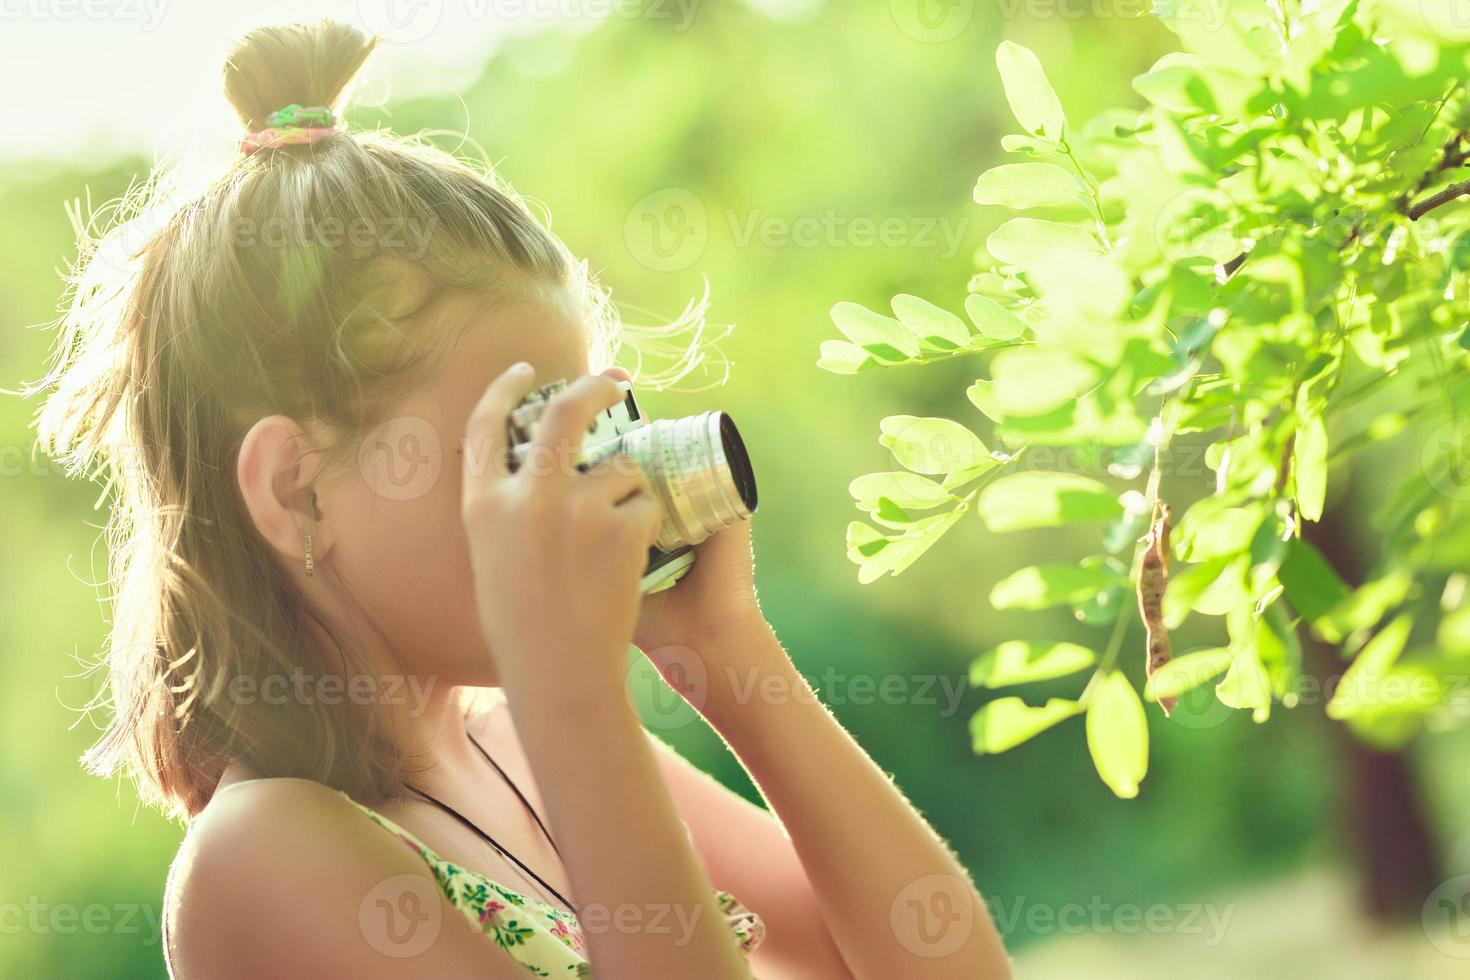 fotógrafo iniciante. uma garotinha tira fotos de uma árvore em sua câmera fotográfica de filme